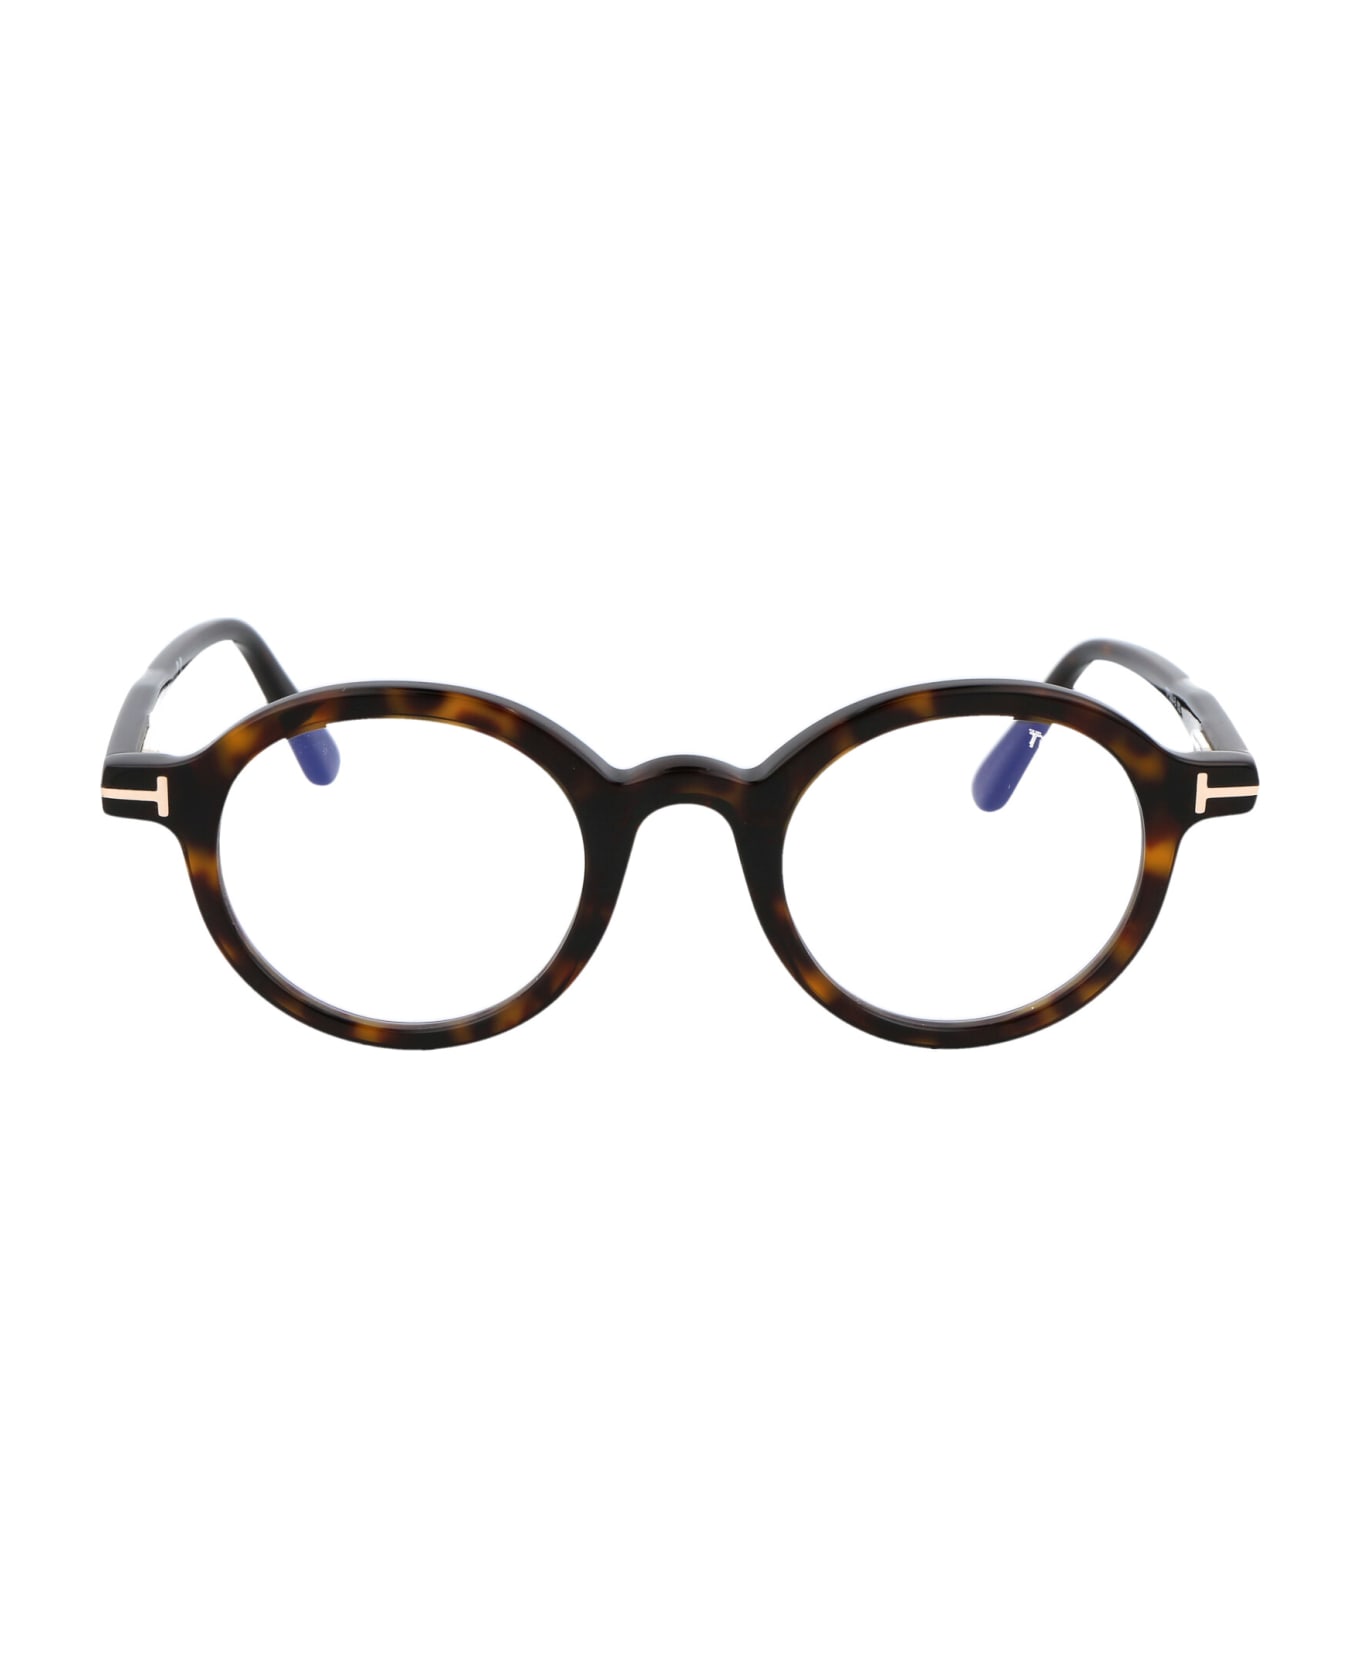 Tom Ford Eyewear Ft5664-b Glasses - 052 Avana Scura